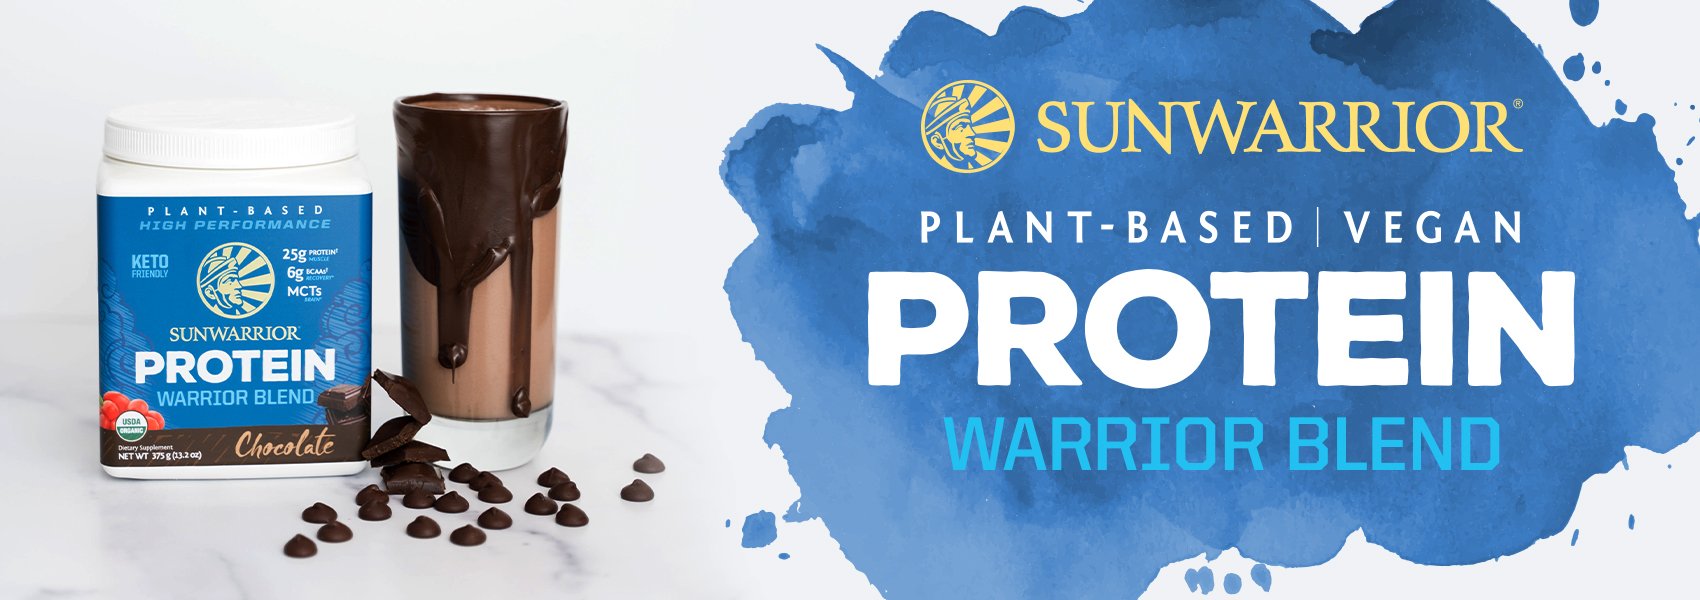 protein powder for pregnant women - Sunwarrior Warrior Blend Protein Powder